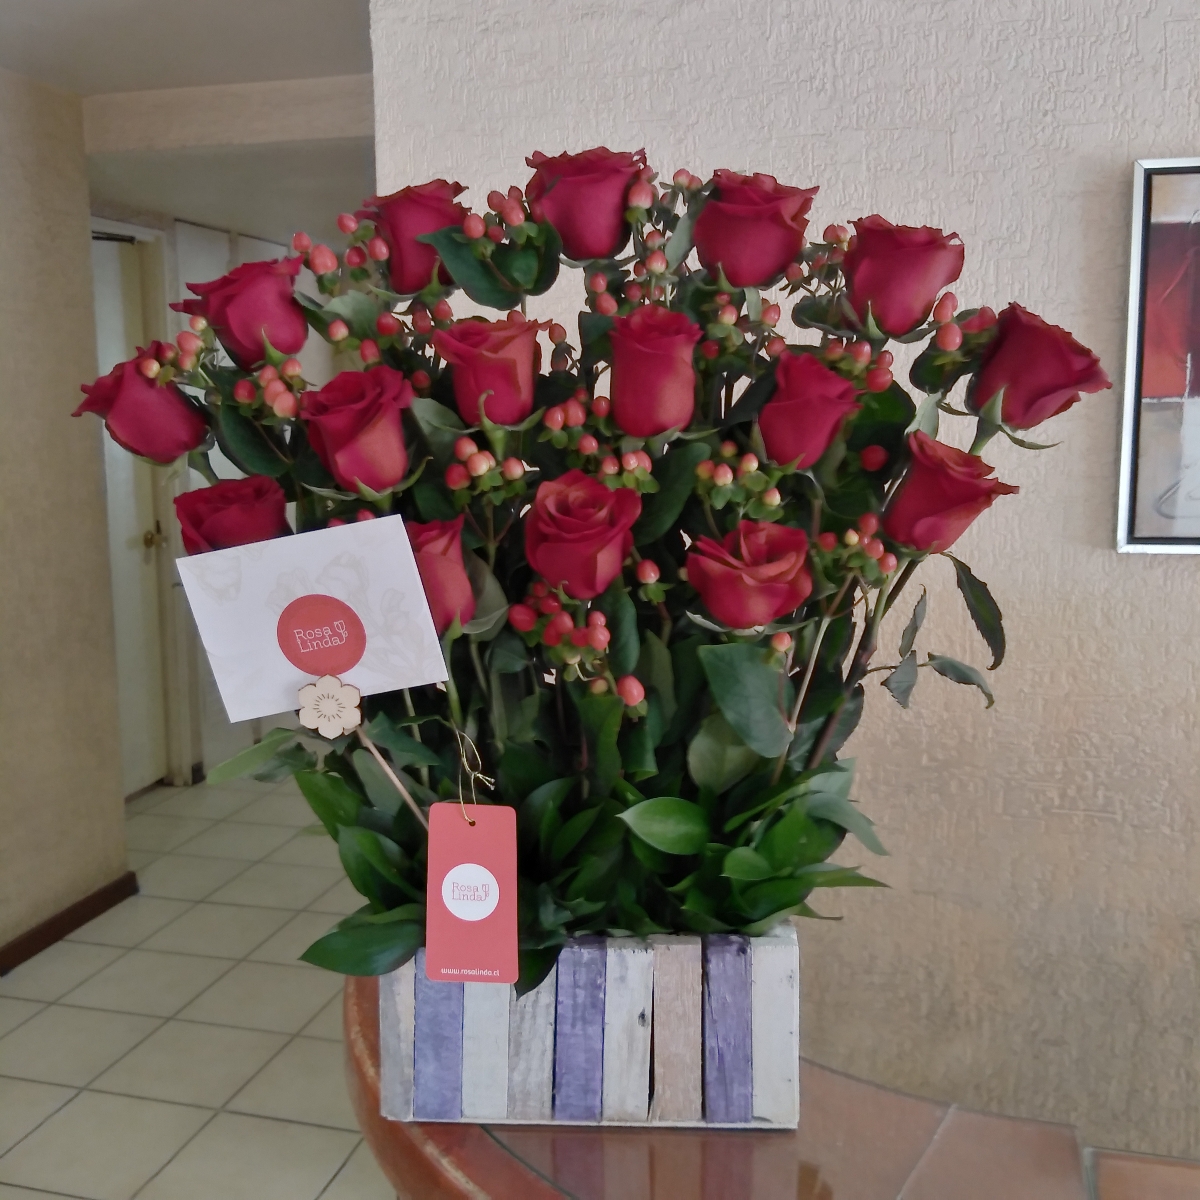 Jardín de Rosas Rojas - Arreglo floral con 16 rosas rojas e hypericum rojo - Pedido 246690